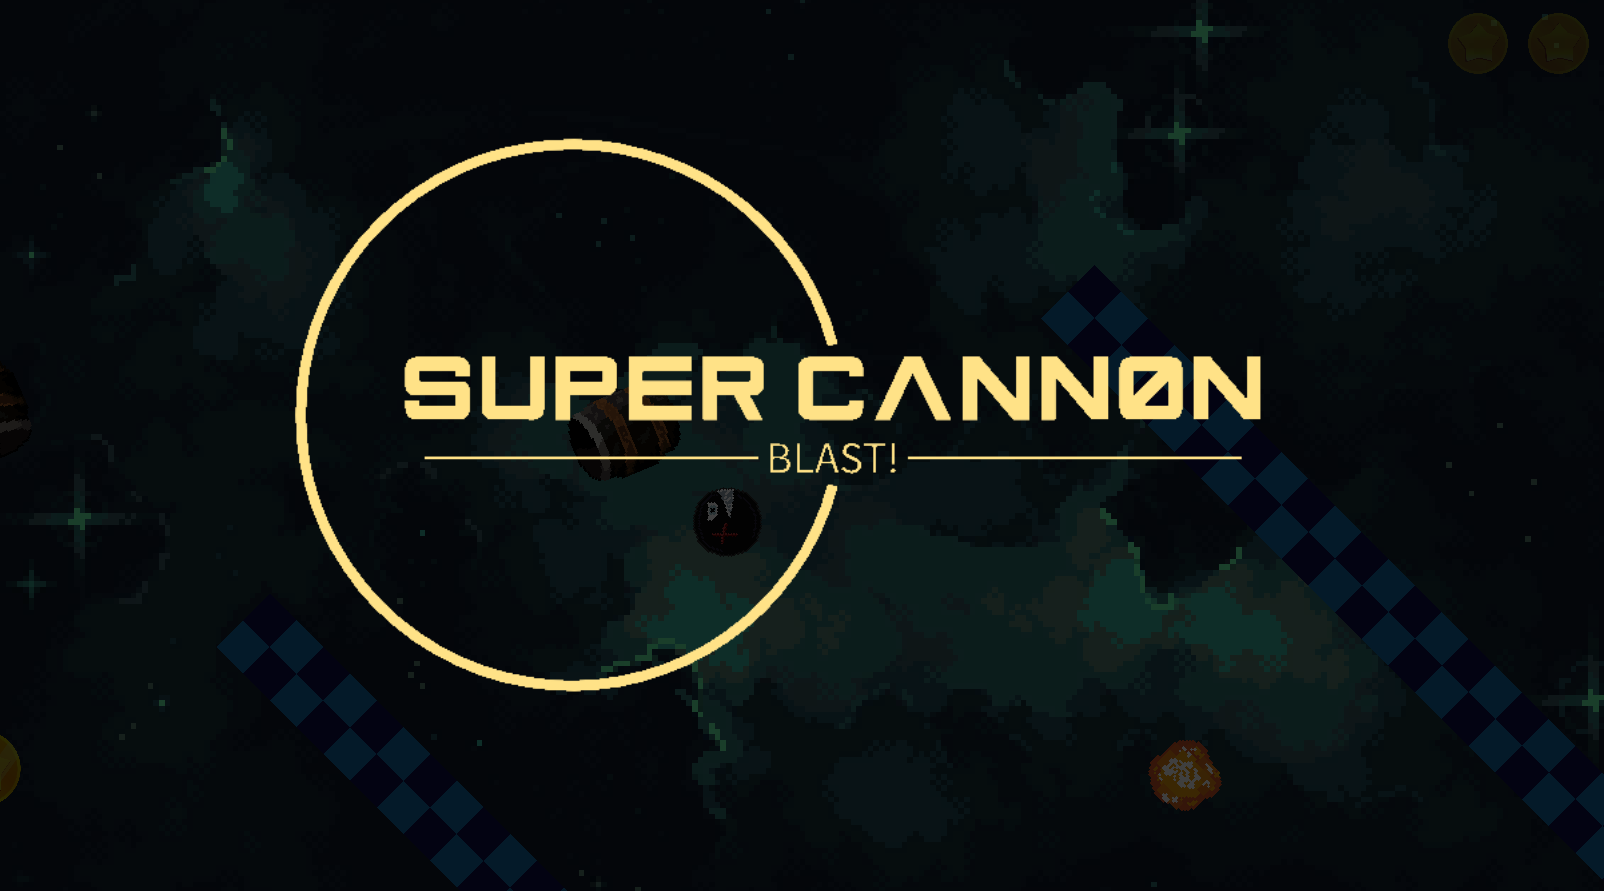 Super Cannon blast!